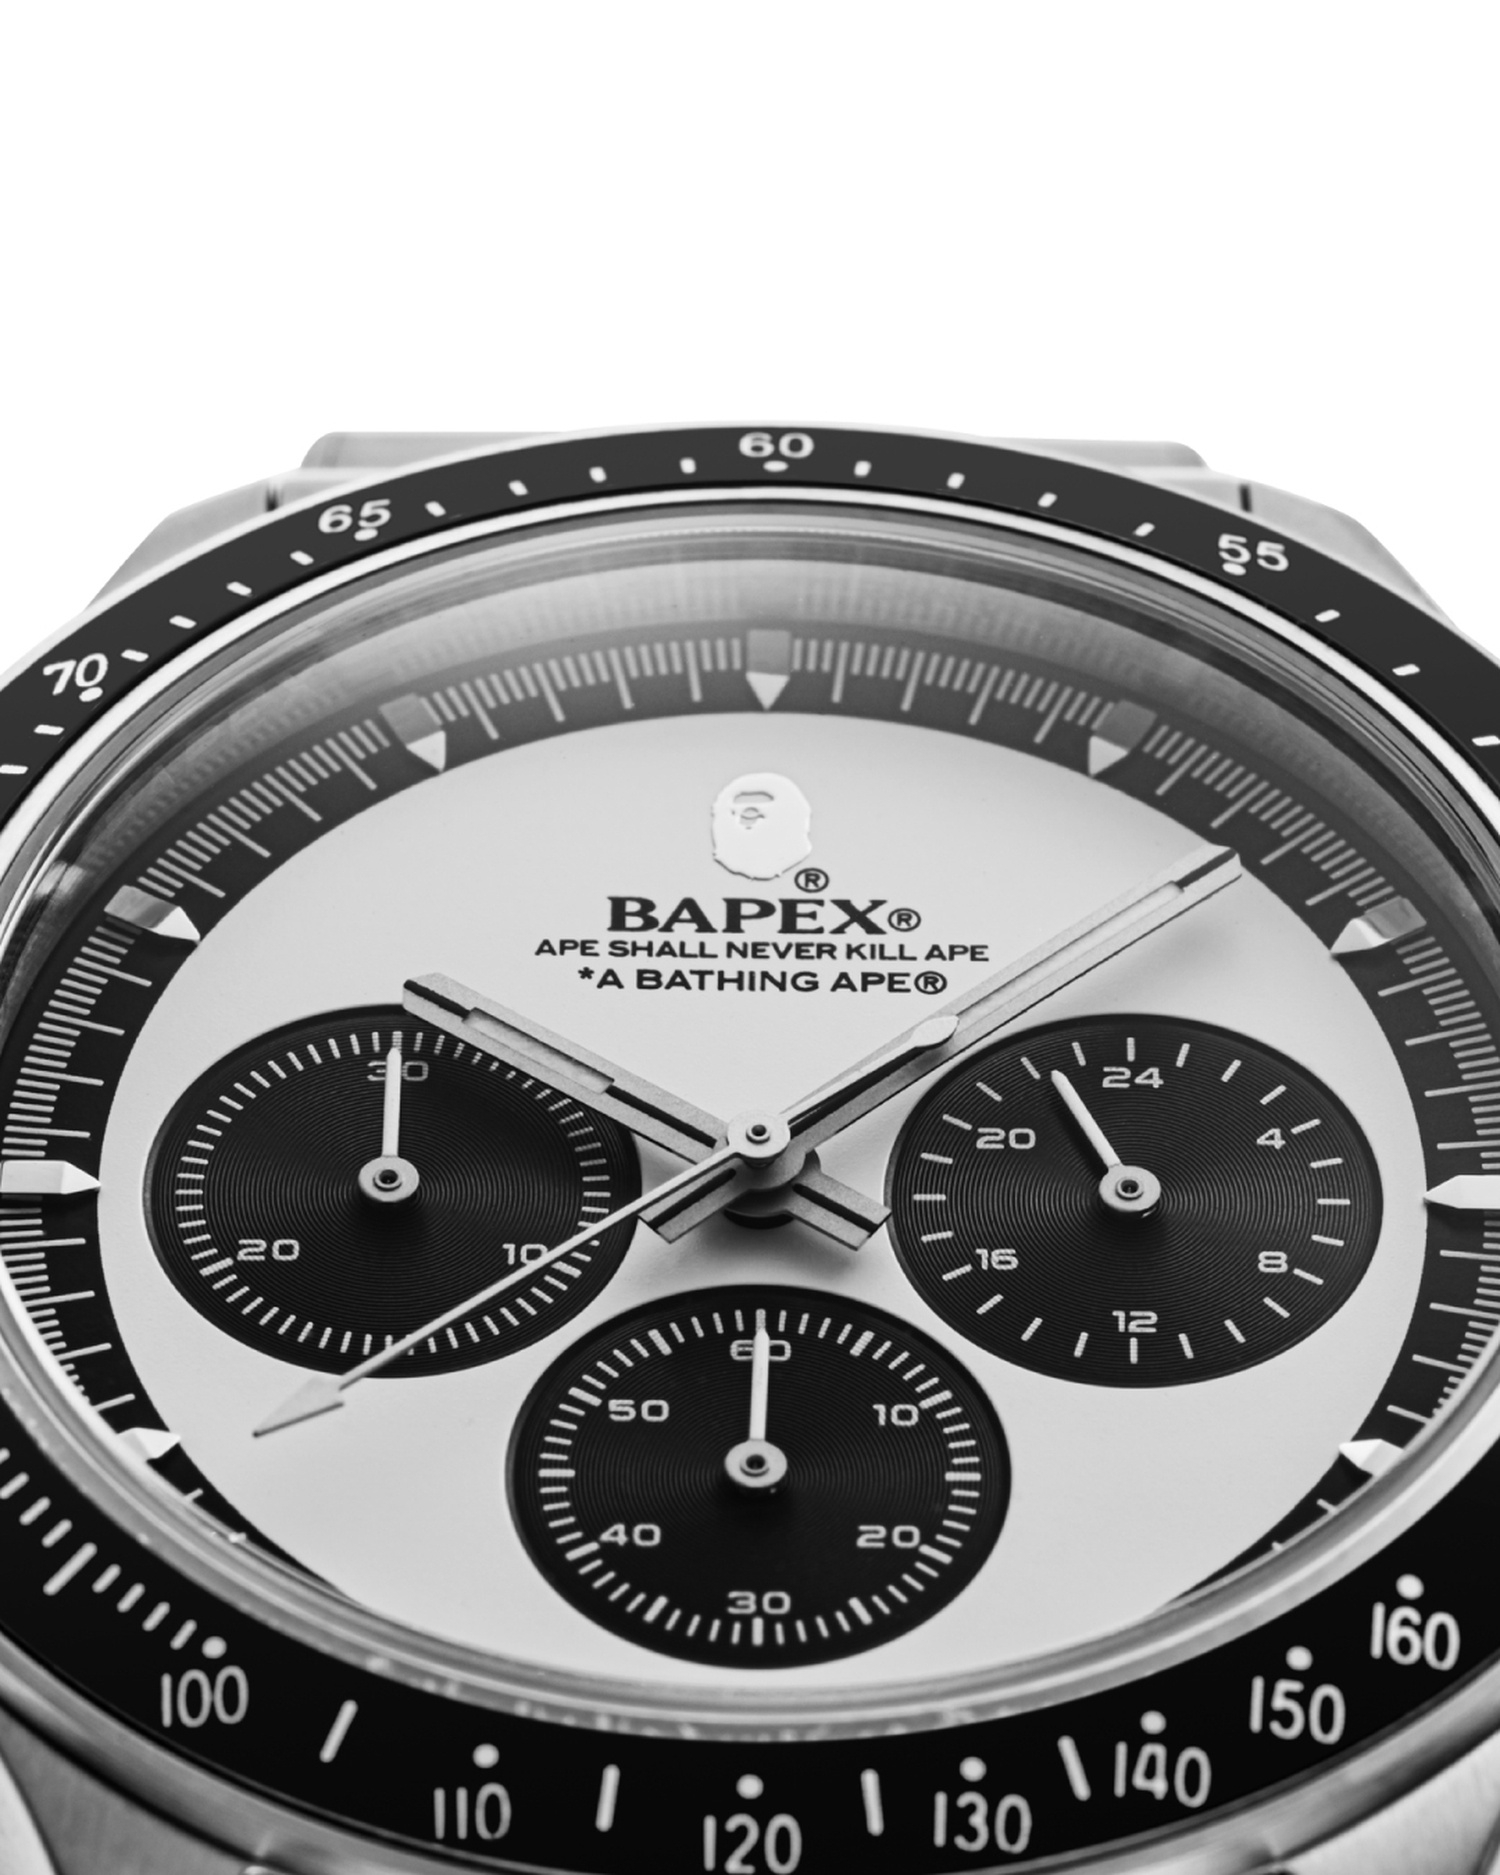 品質保証低価ラスト1 A BATHING APE TYPE 4 BAPEX M (42mm) 腕時計(アナログ)